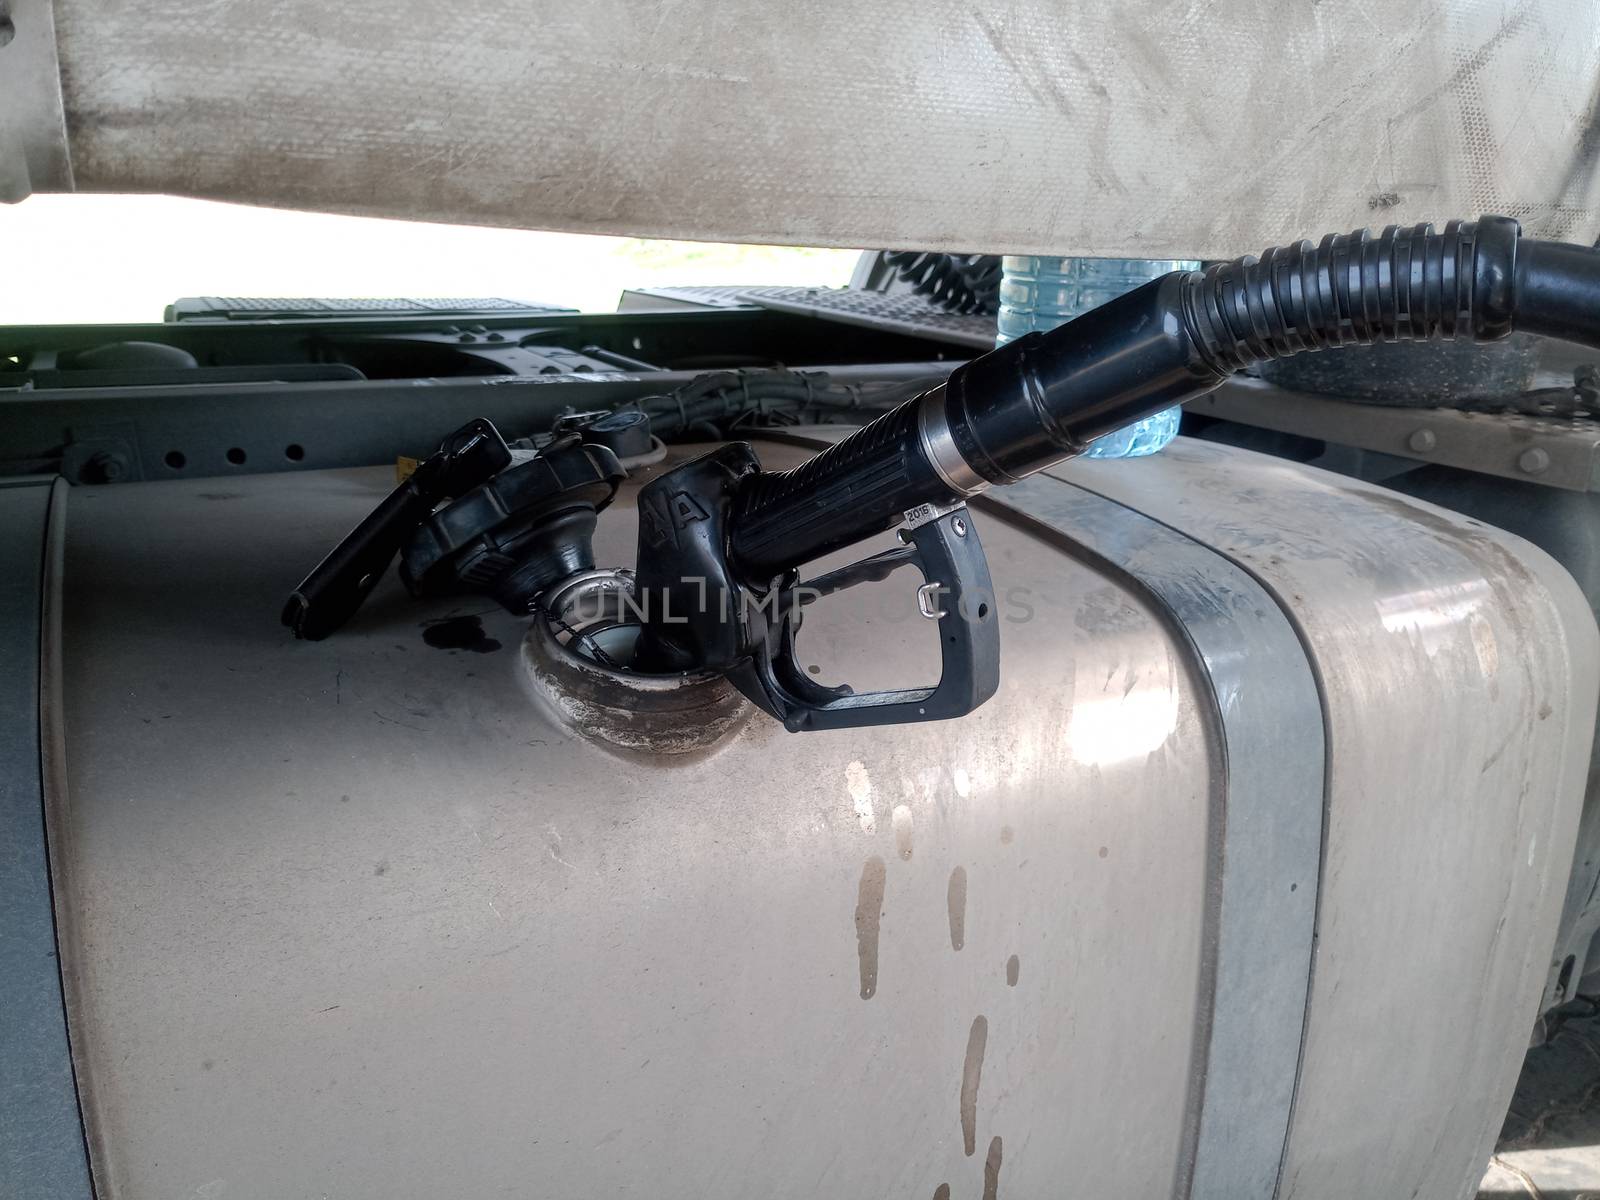 Diesel refueling gun in a truck tank.